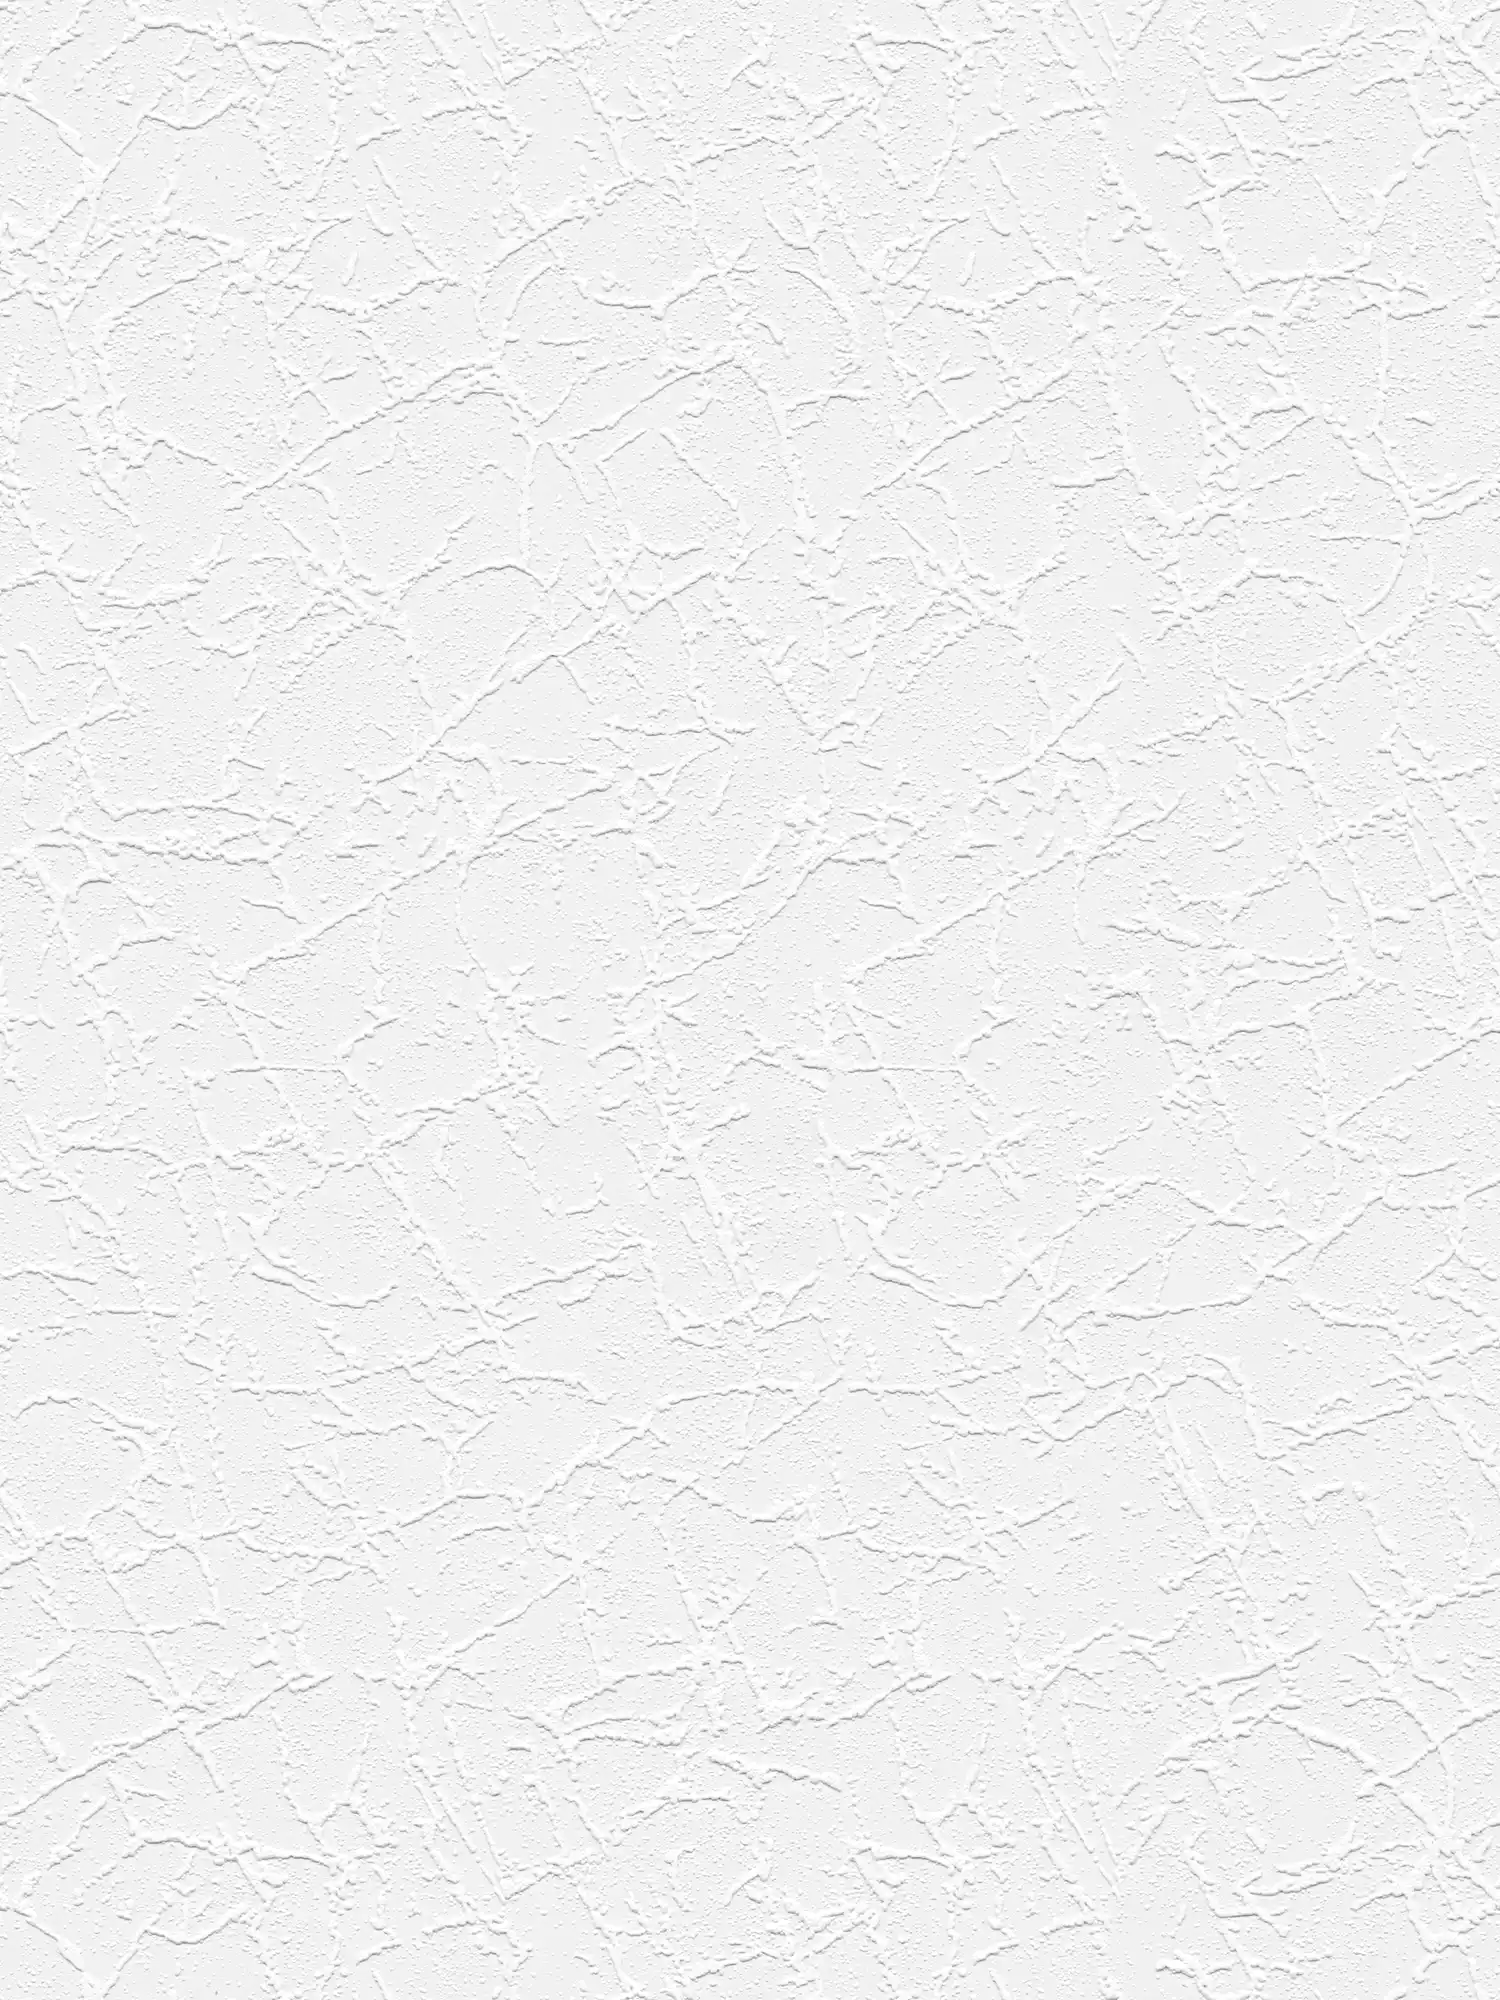 óptica de yeso llana de papel tapiz patrón de estructura de yeso - blanco
